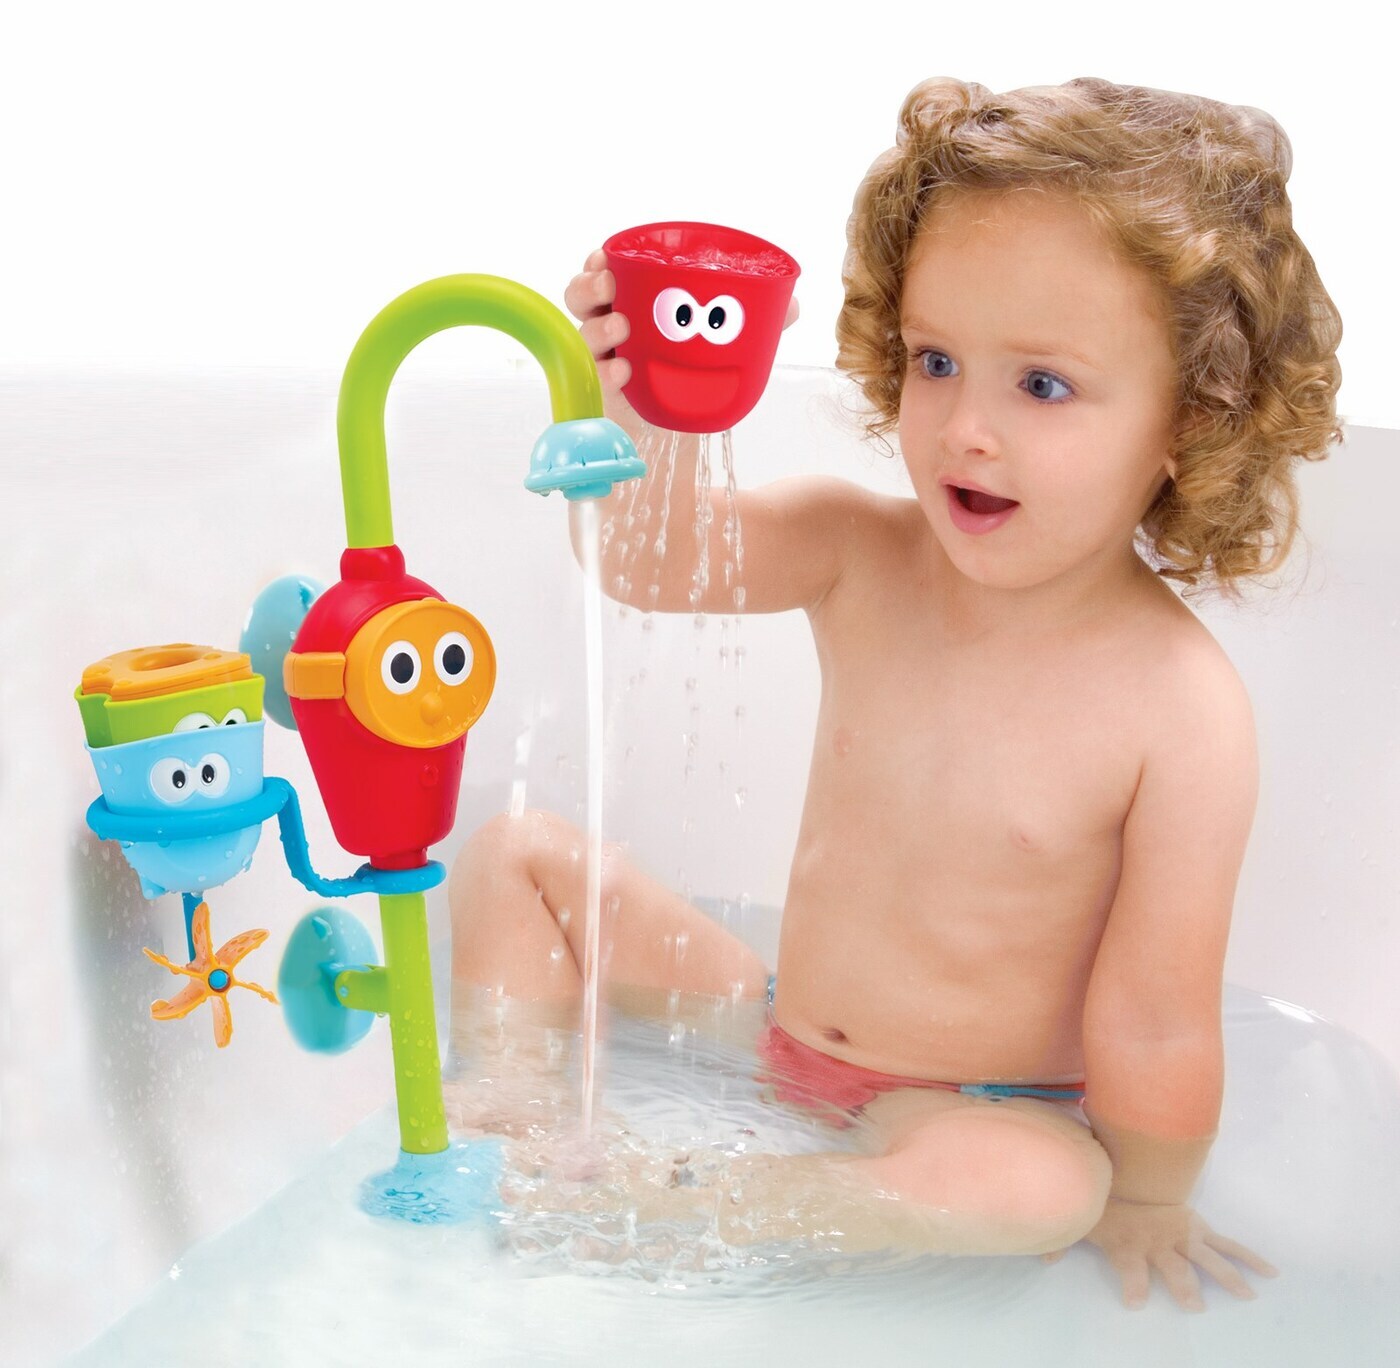 7 популярных игрушек для купания детей до 1,5 года